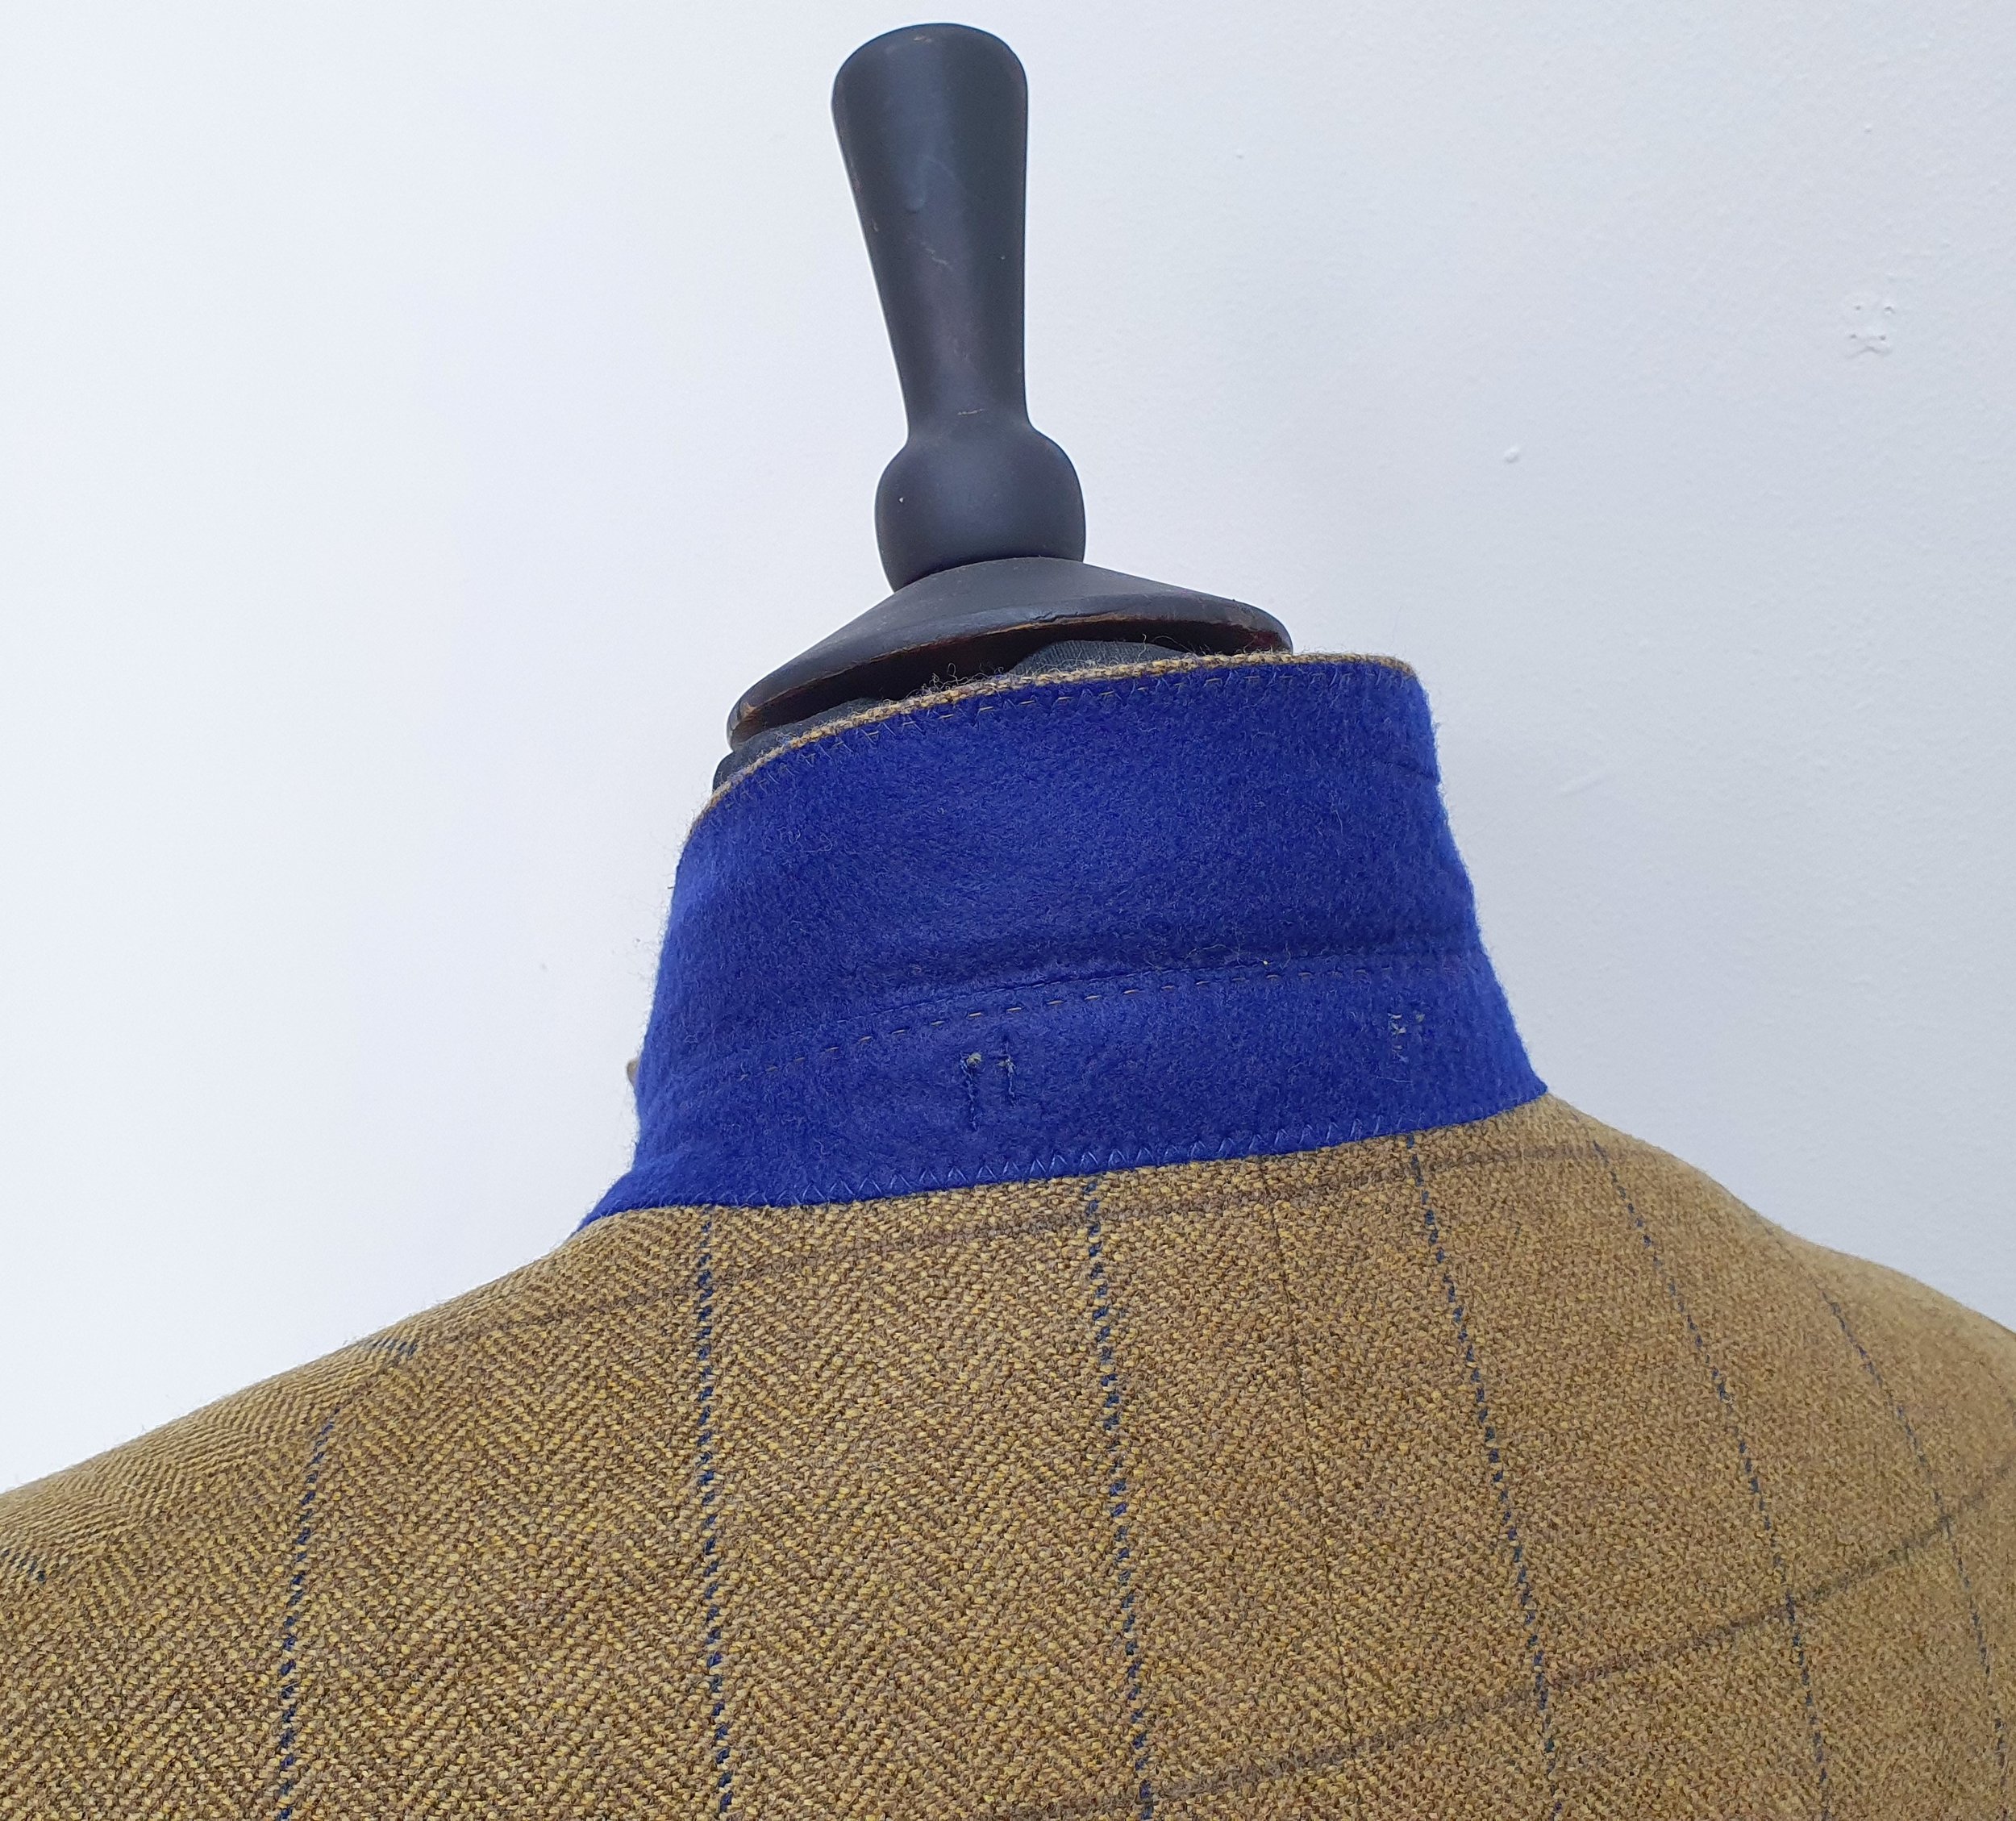 2 Piece suit in porter and harding Glenroyal tweed (7).jpg